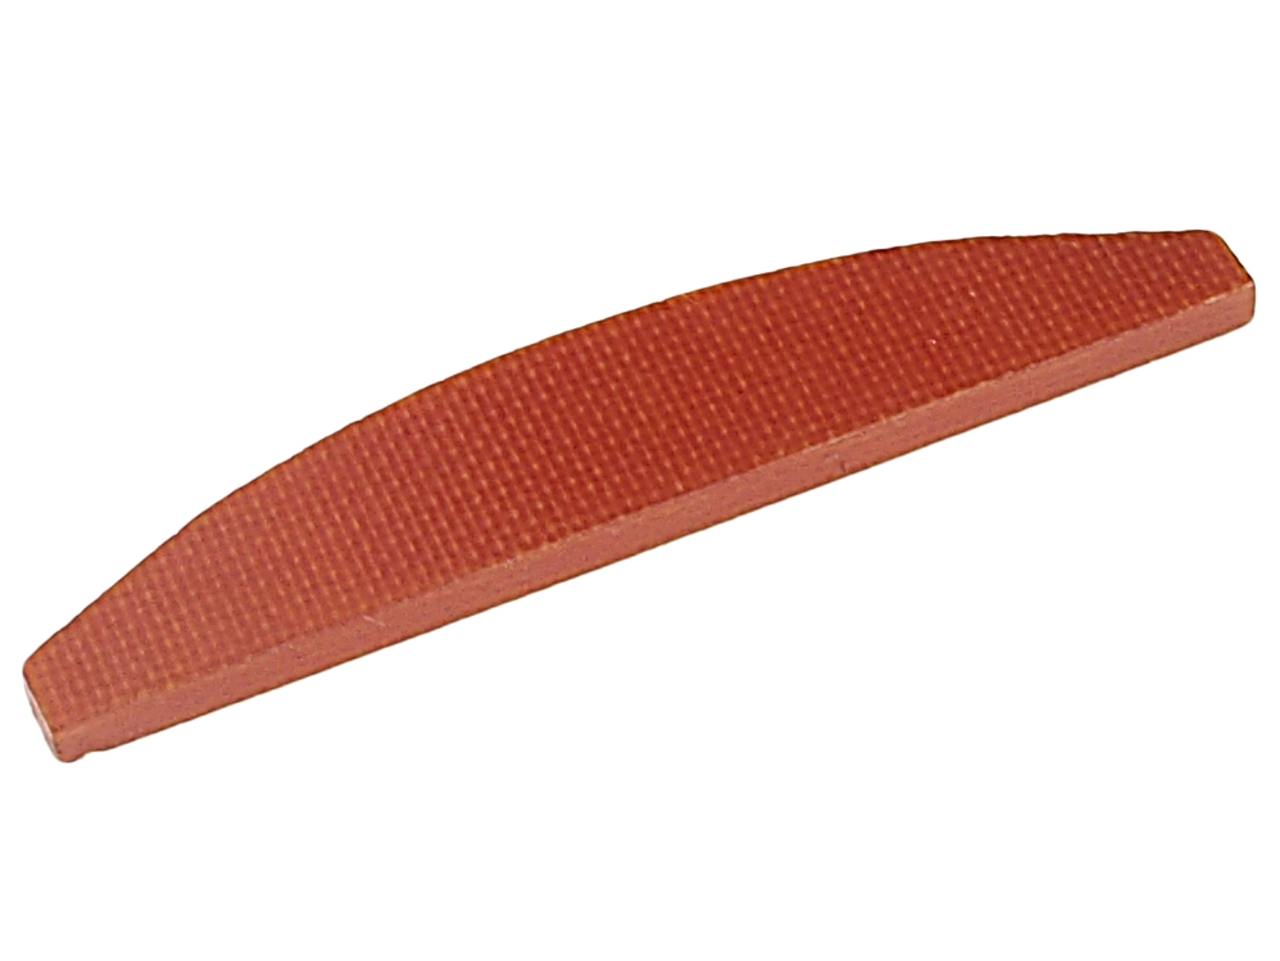 Ремкомплект для ножа пневматического JTC-3830 (20) подшипник JTC